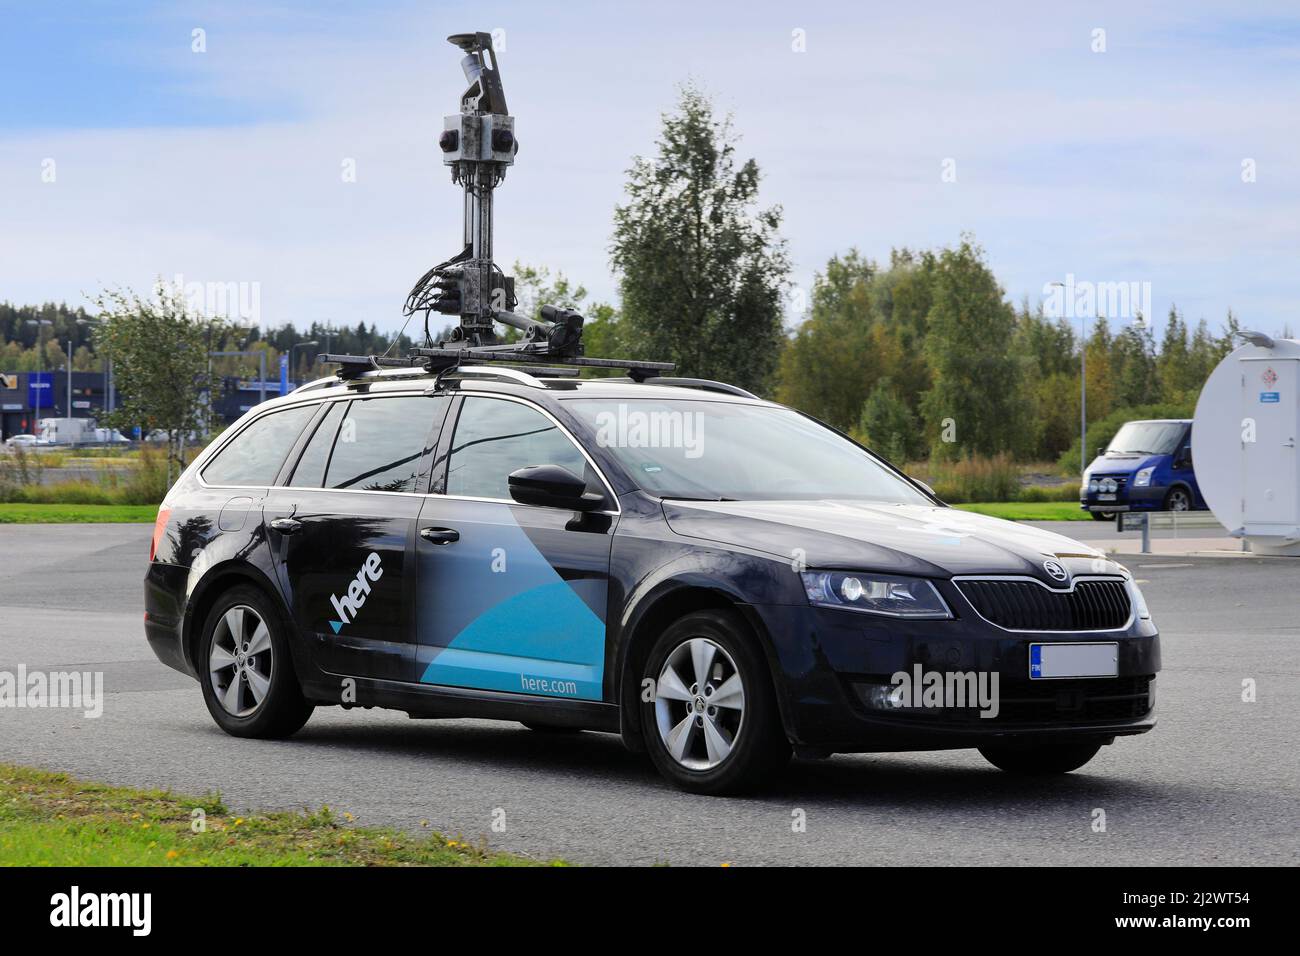 QUI mappatura auto Skoda Octavia con hardware di mappatura, ad esempio quattro telecamere grandangolari, montato sulla parte superiore. Forssa, Finlandia. Settembre 18, 2020. Foto Stock